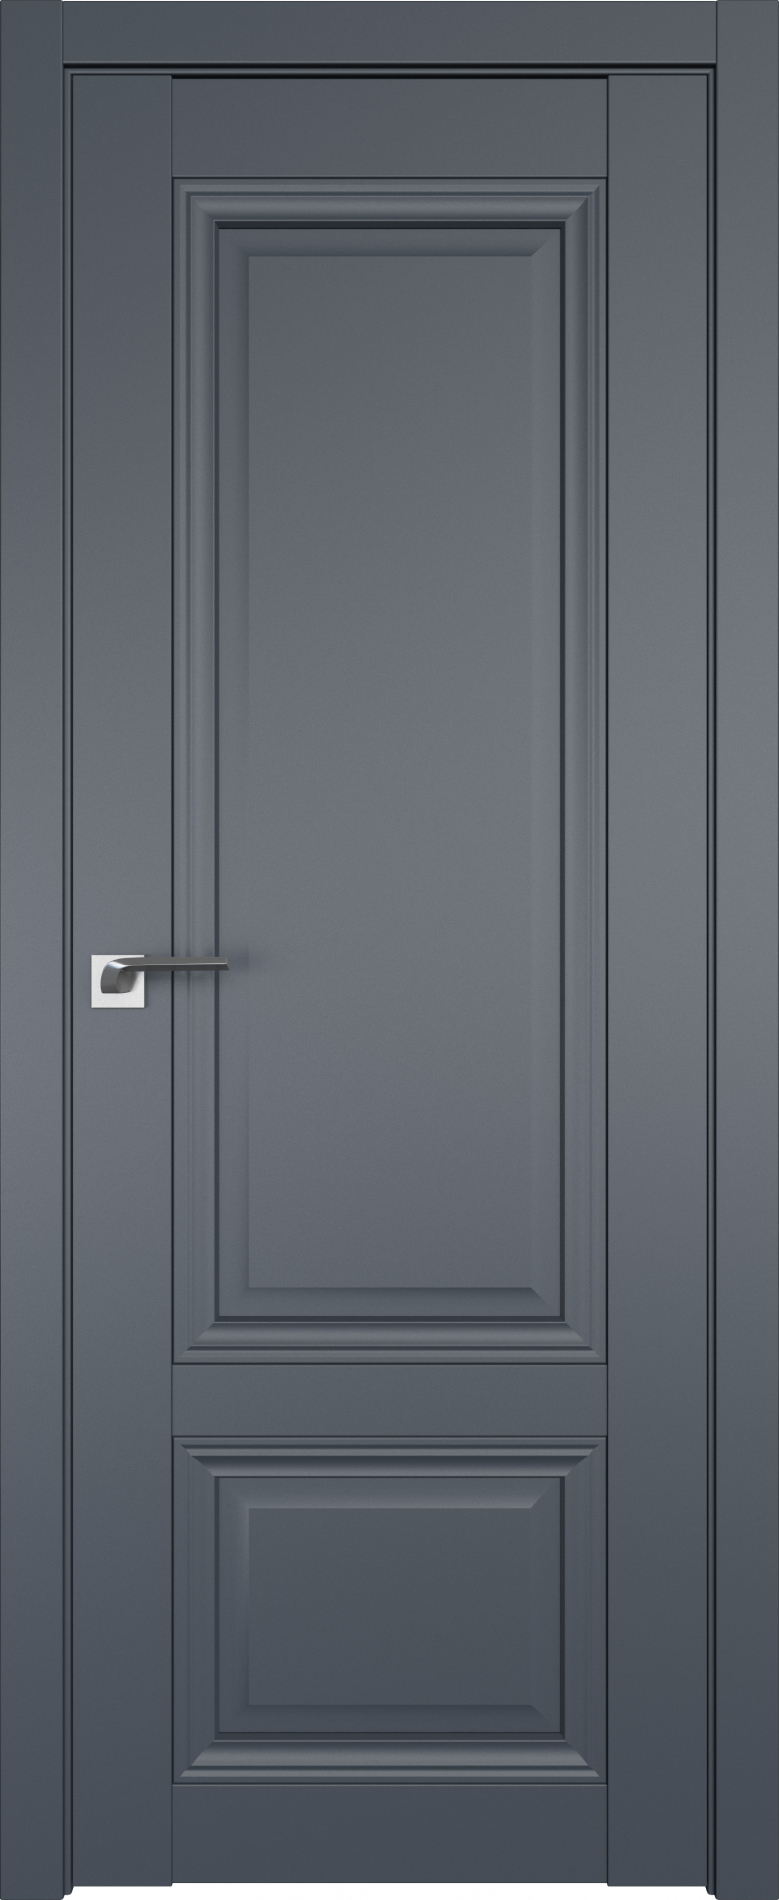 межкомнатные двери  Profil Doors 2.102U антрацит